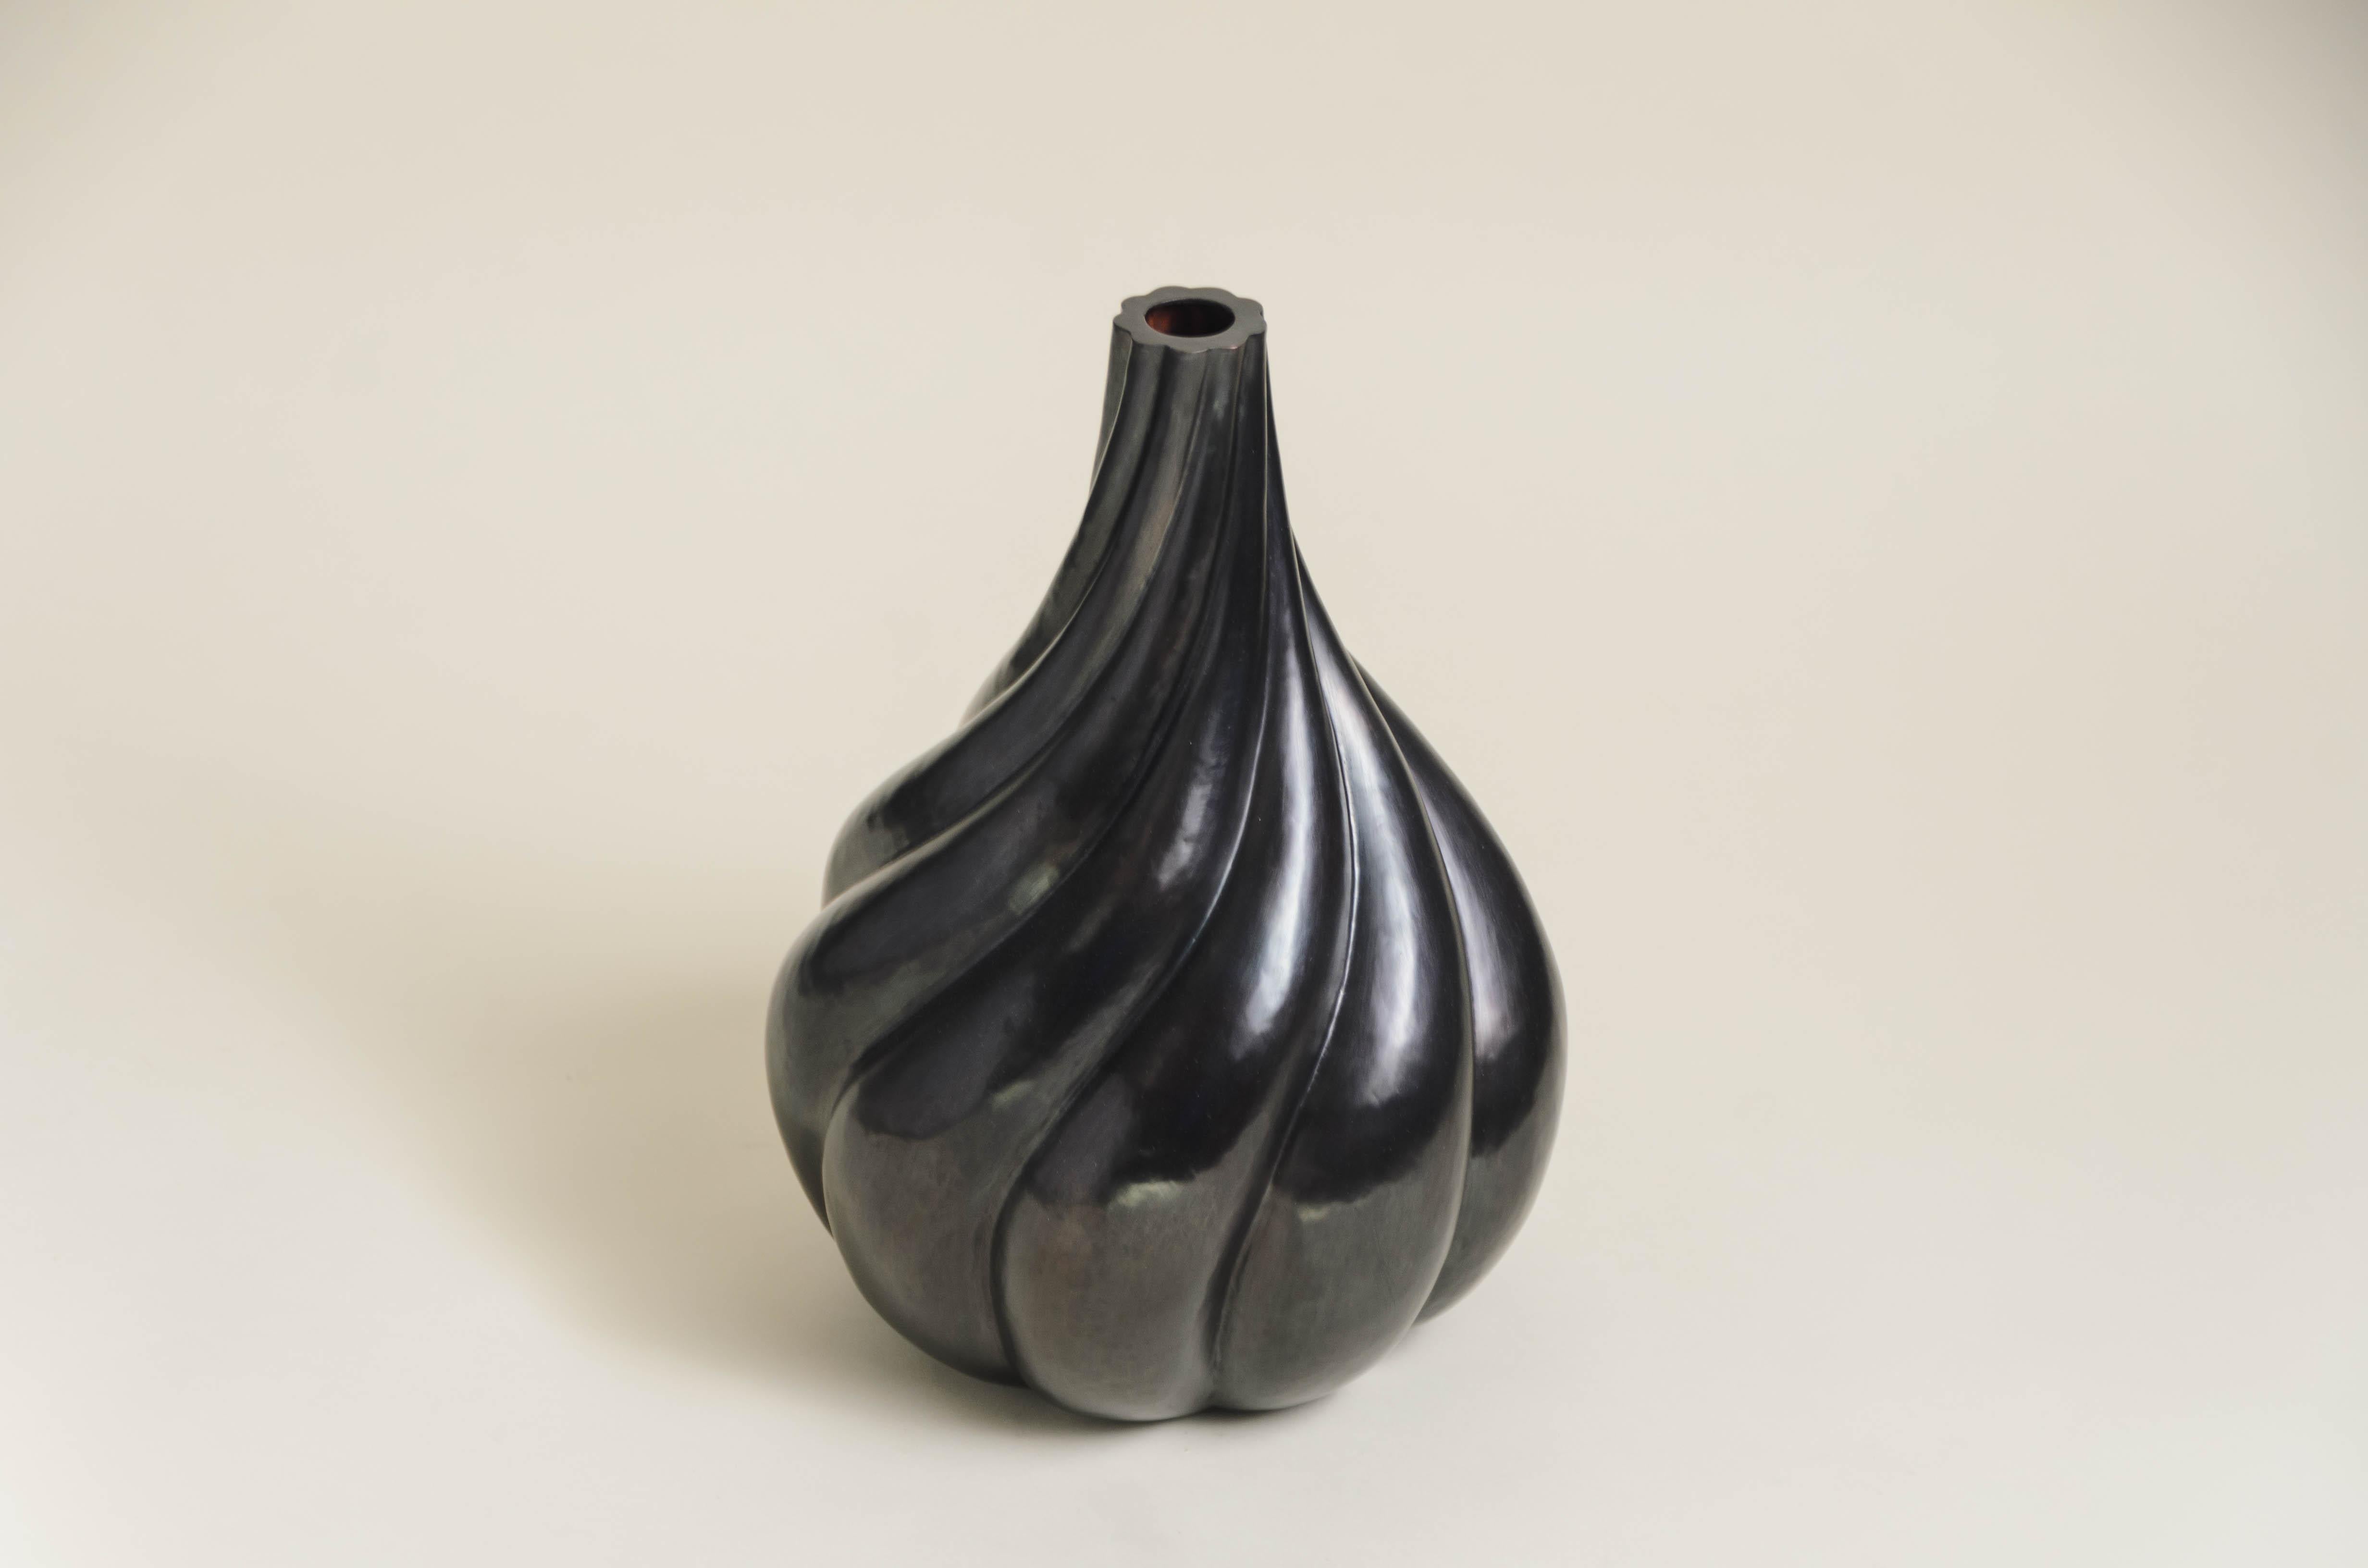 Vase en forme de tourbillon
Noir Cuivre
Repoussé à la main
Édition limitée
Contemporain
Chaque pièce est fabriquée individuellement et est unique. 

Le repoussé est l'art traditionnel qui consiste à marteler à la main un relief décoratif sur une